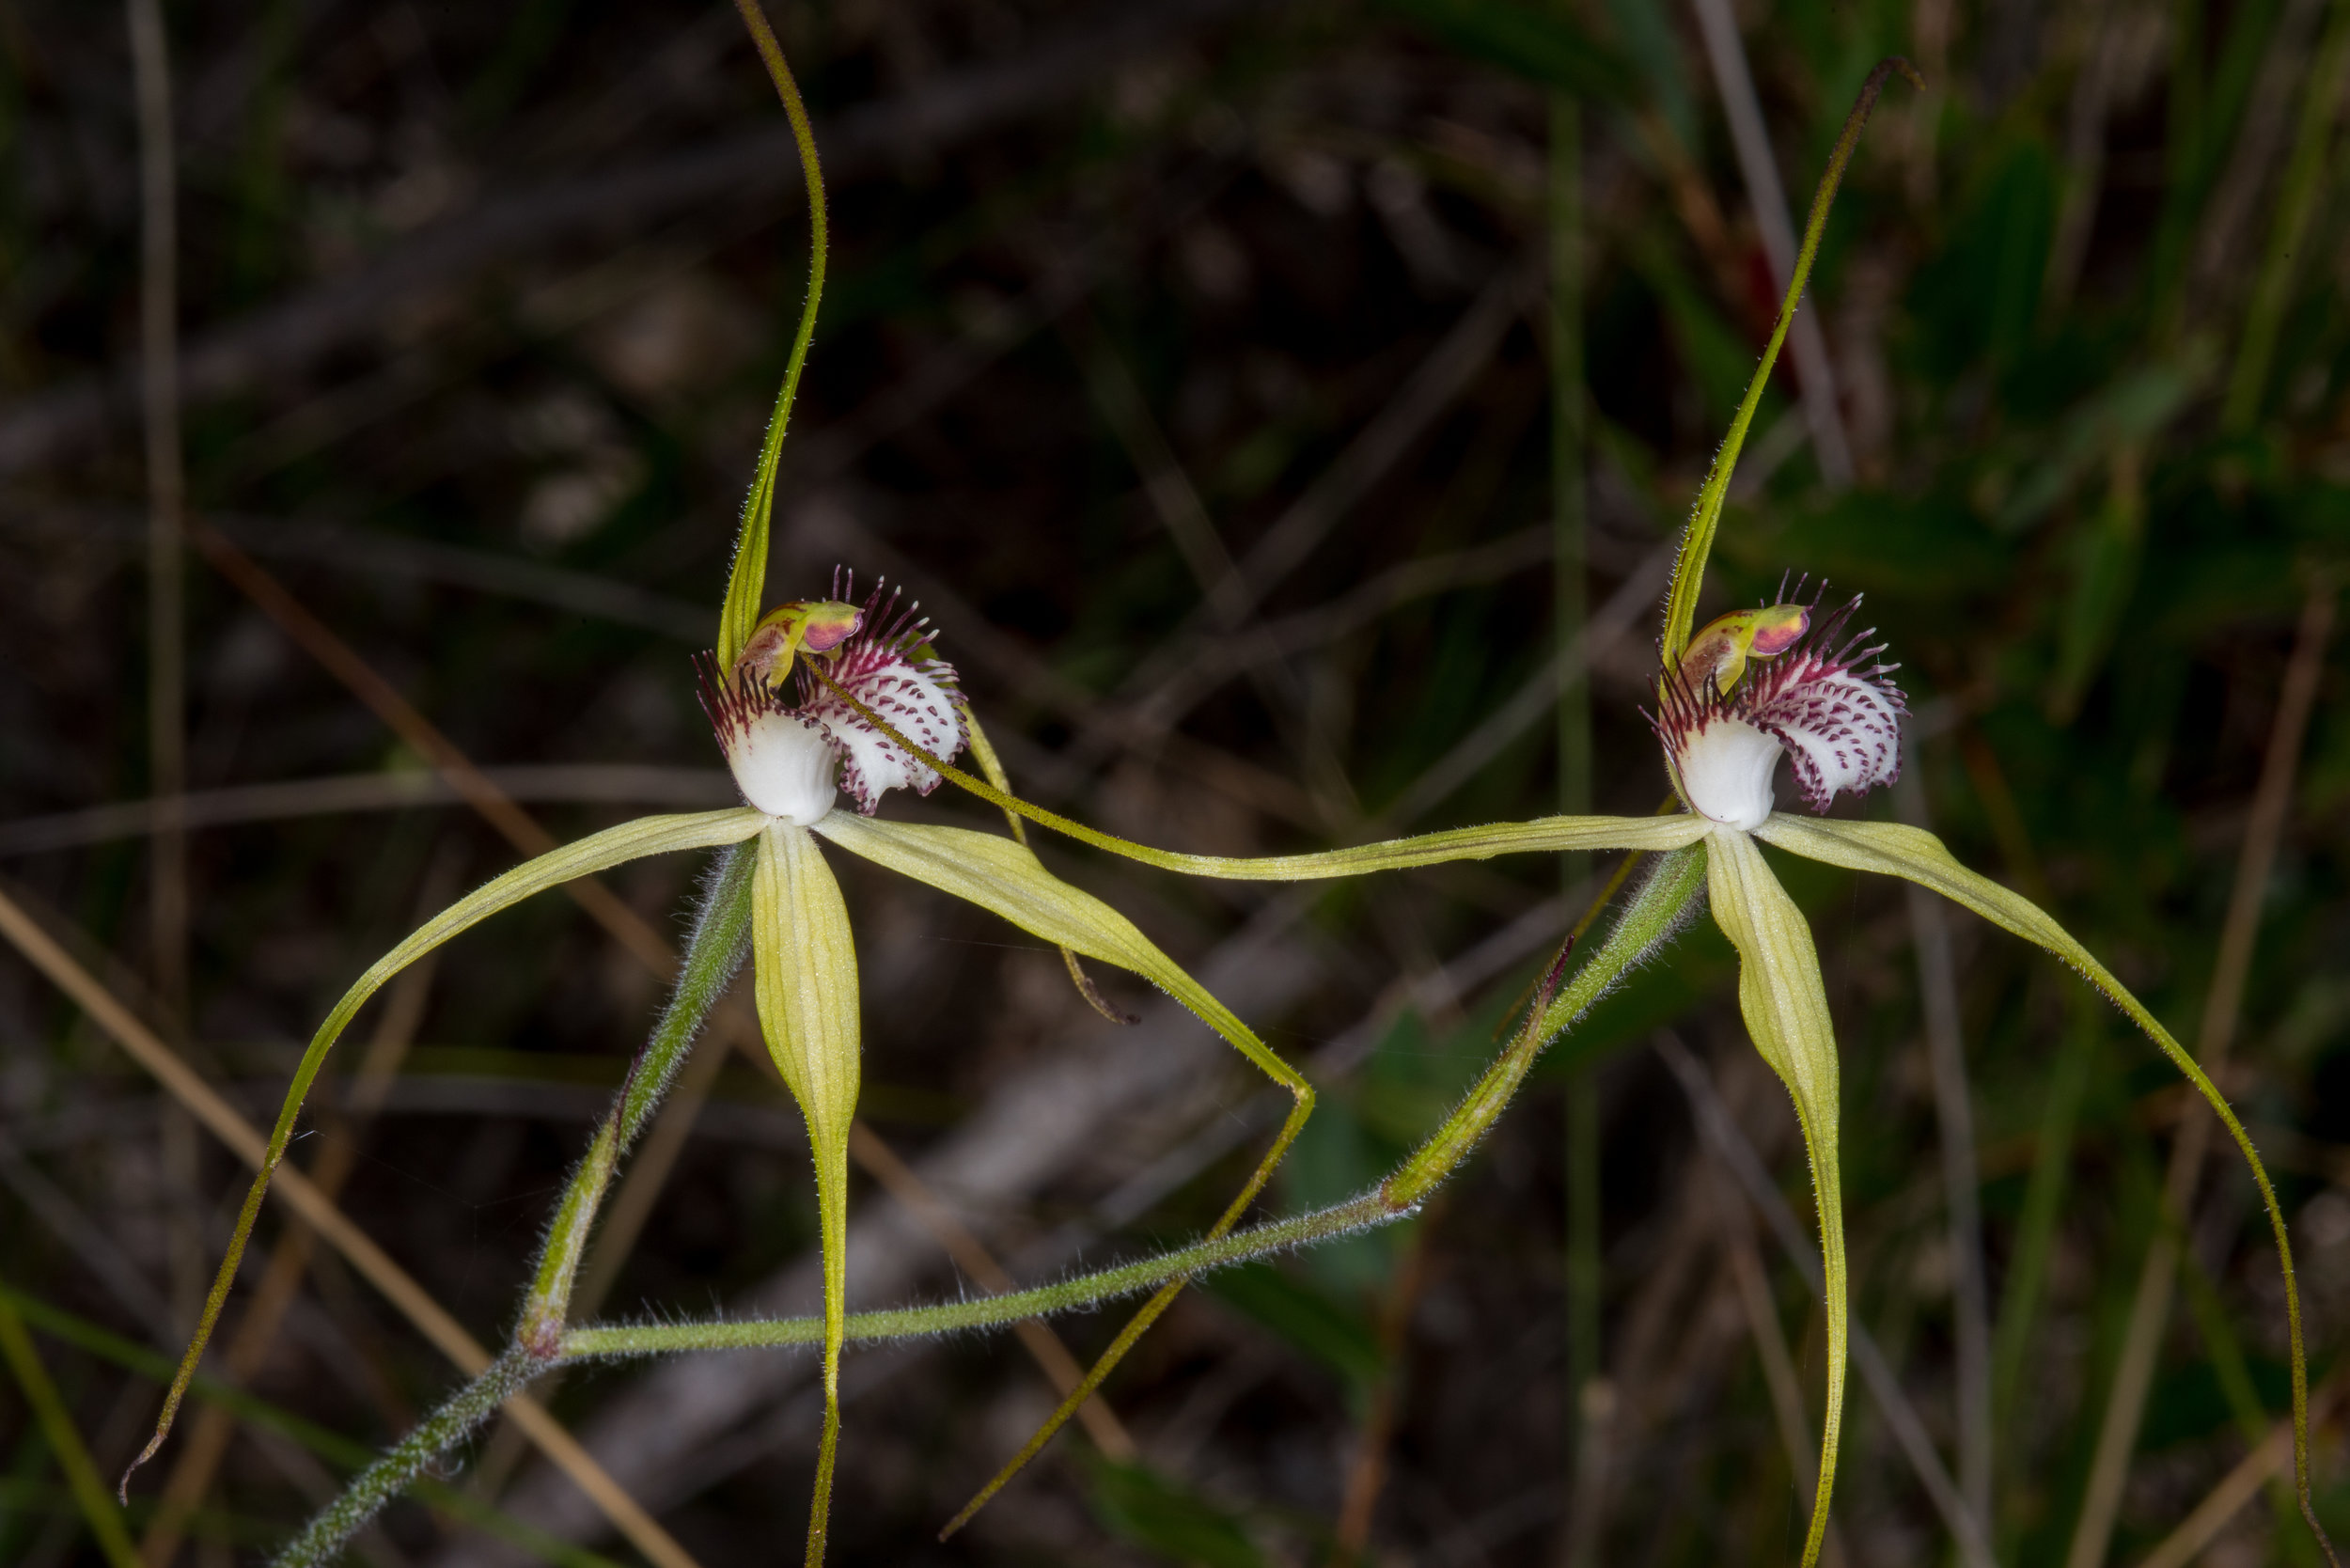  Caladenia swartsiorum – Island Point Spider Orchid, Island Point Reserve, near Mandurah 